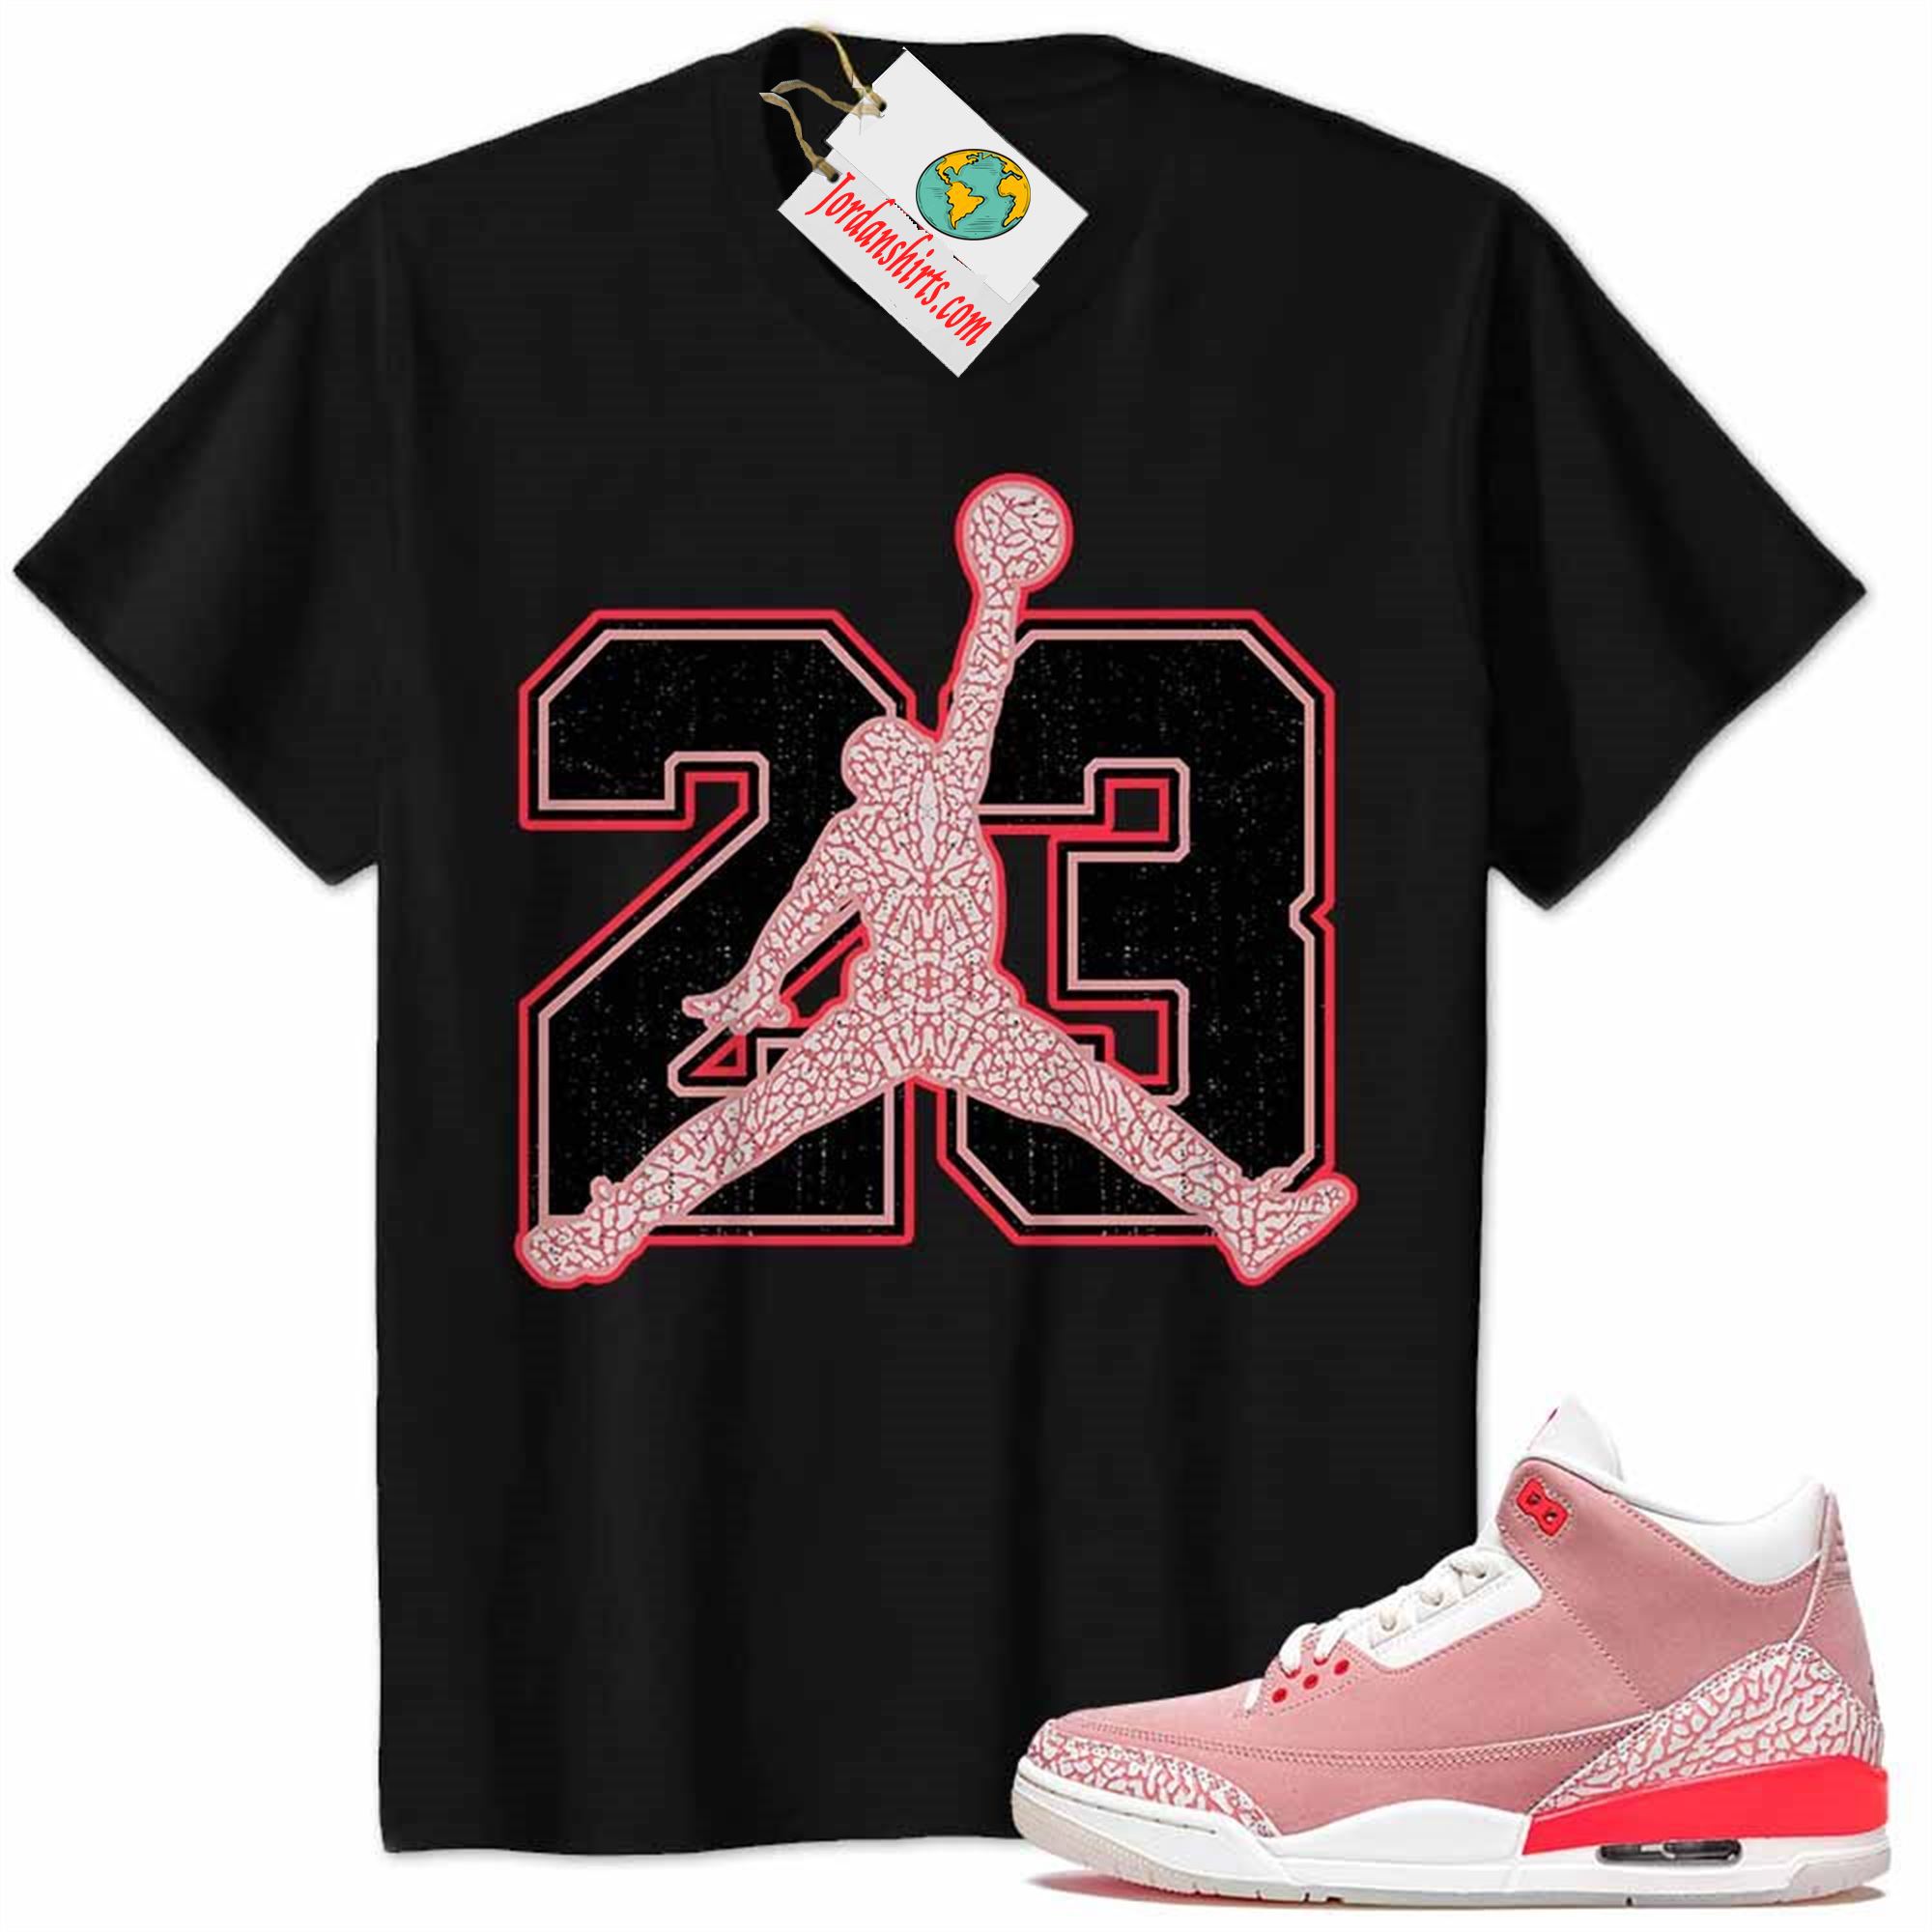 Jordan 3 Shirt, Jordan 3 Rust Pink Shirt Jumpman No23 Black Plus Size Up To 5xl